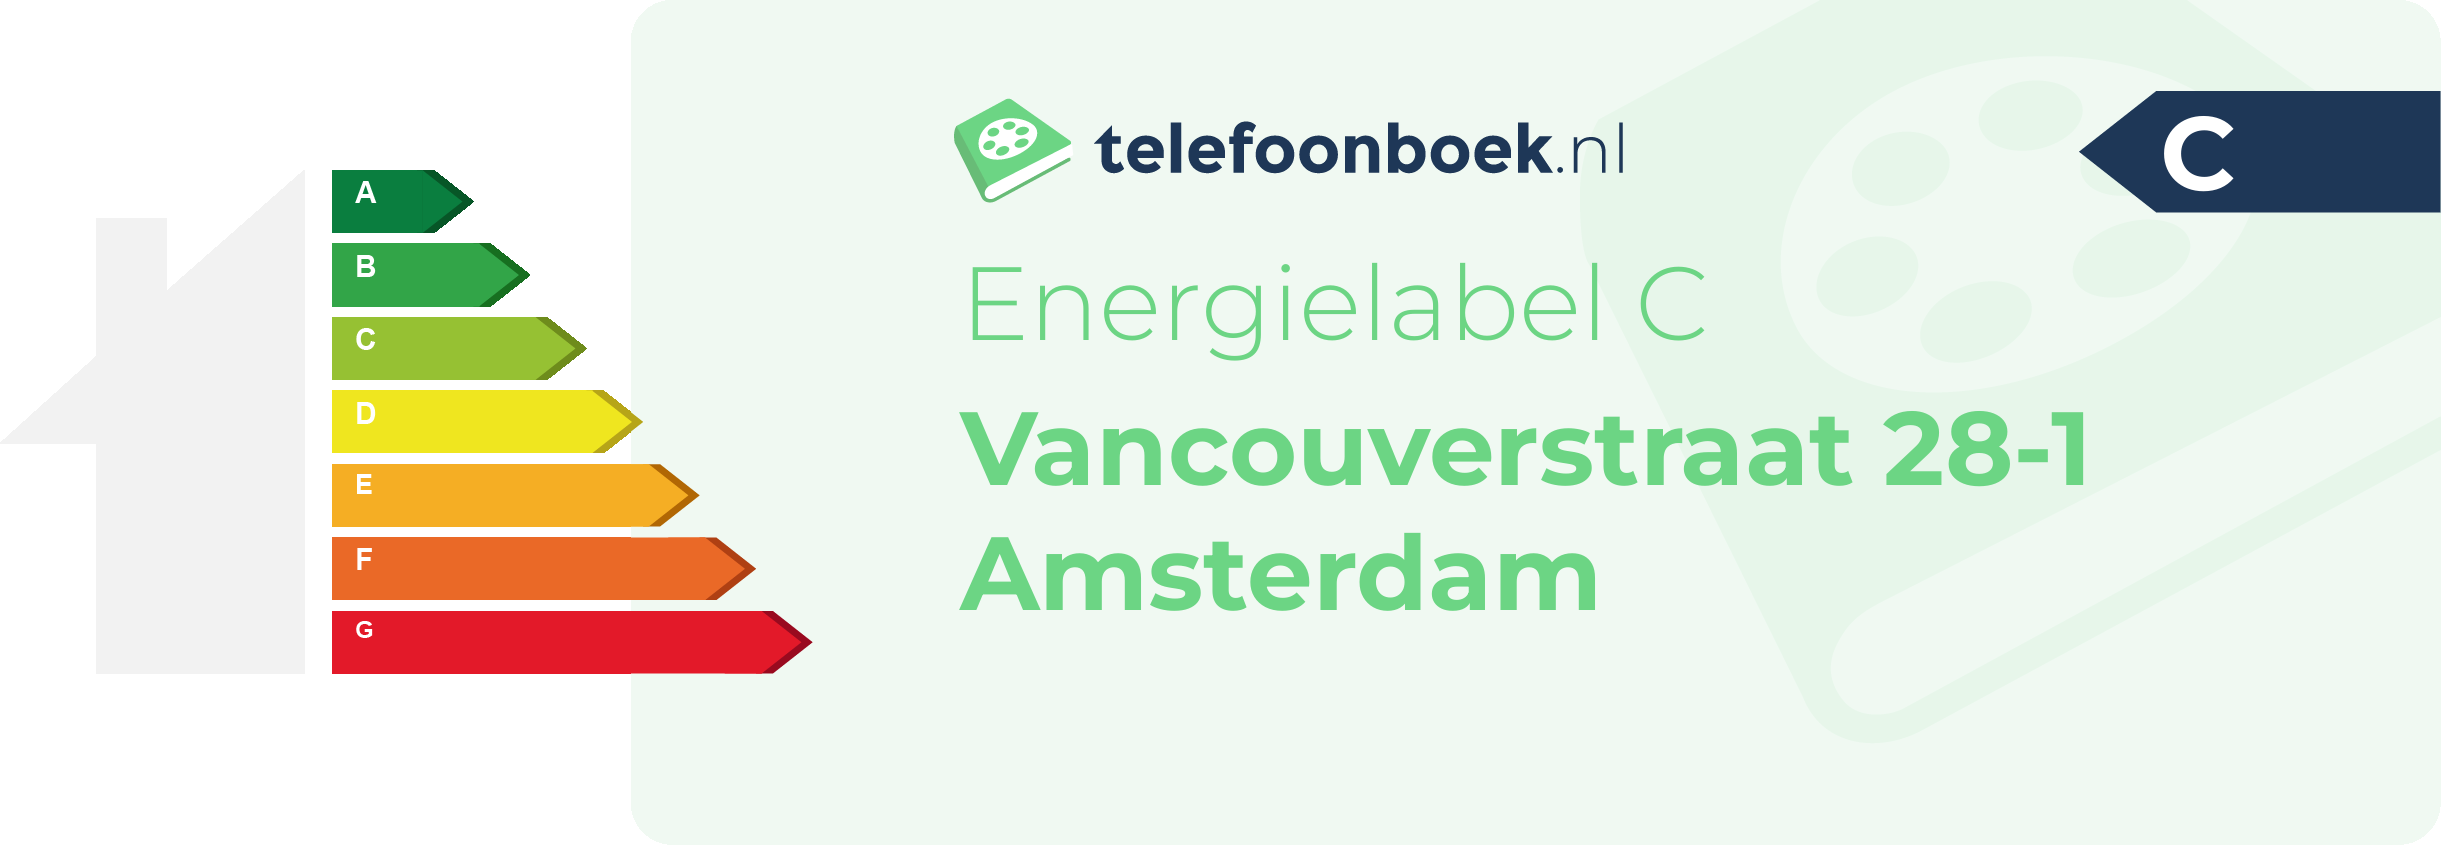 Energielabel Vancouverstraat 28-1 Amsterdam